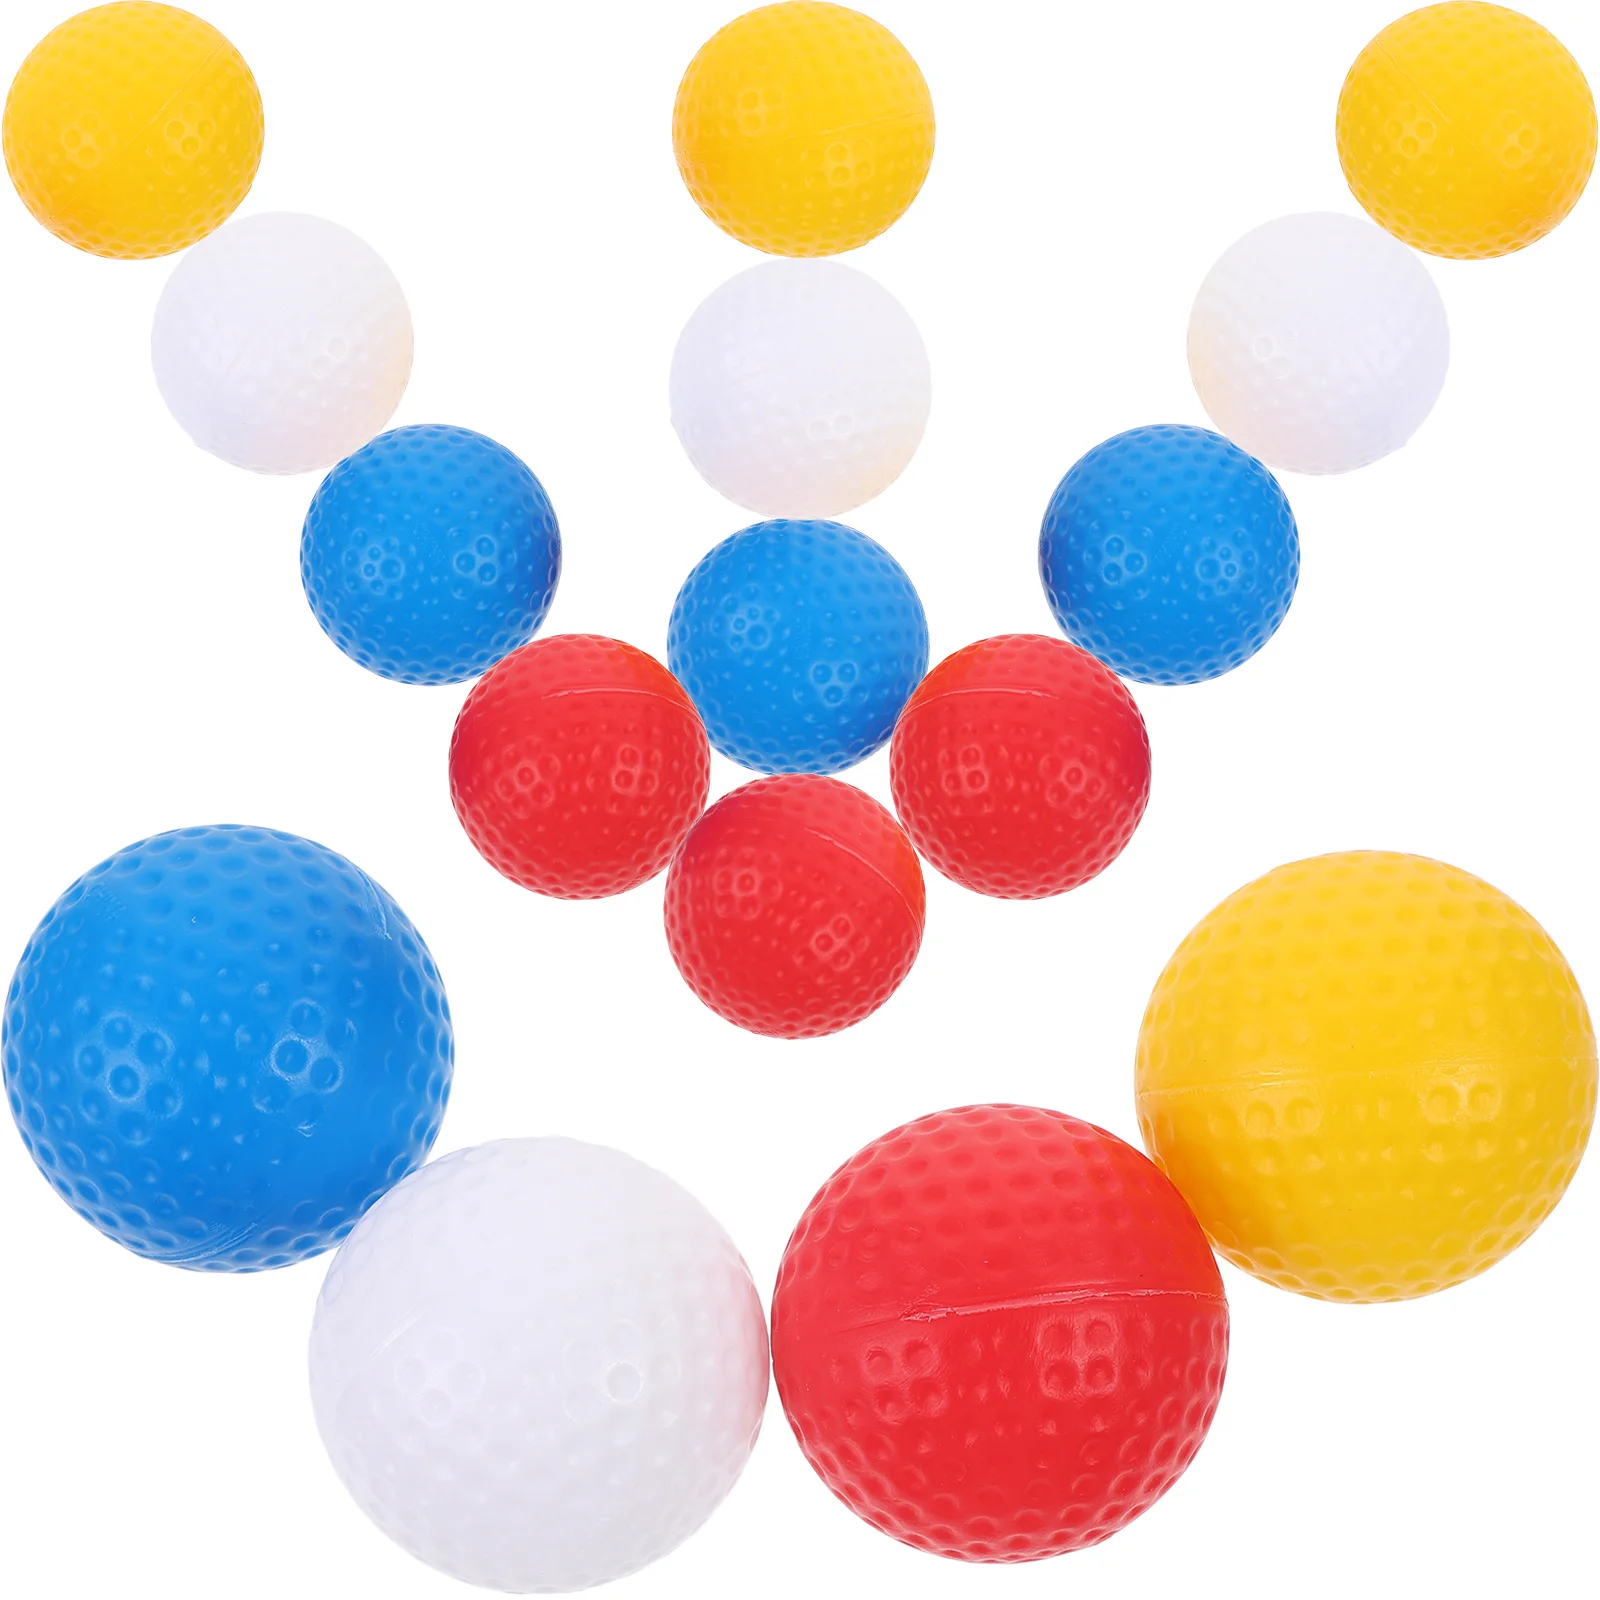 Мячи для игры в гольф, Цветные мячи для гольфа, маленькие мячи для гольфа, портативные мячи для игры в гольф 1 шт мячи для гольфа для ночного спорта светящиеся в темноте яркие цветные светящиеся мячи